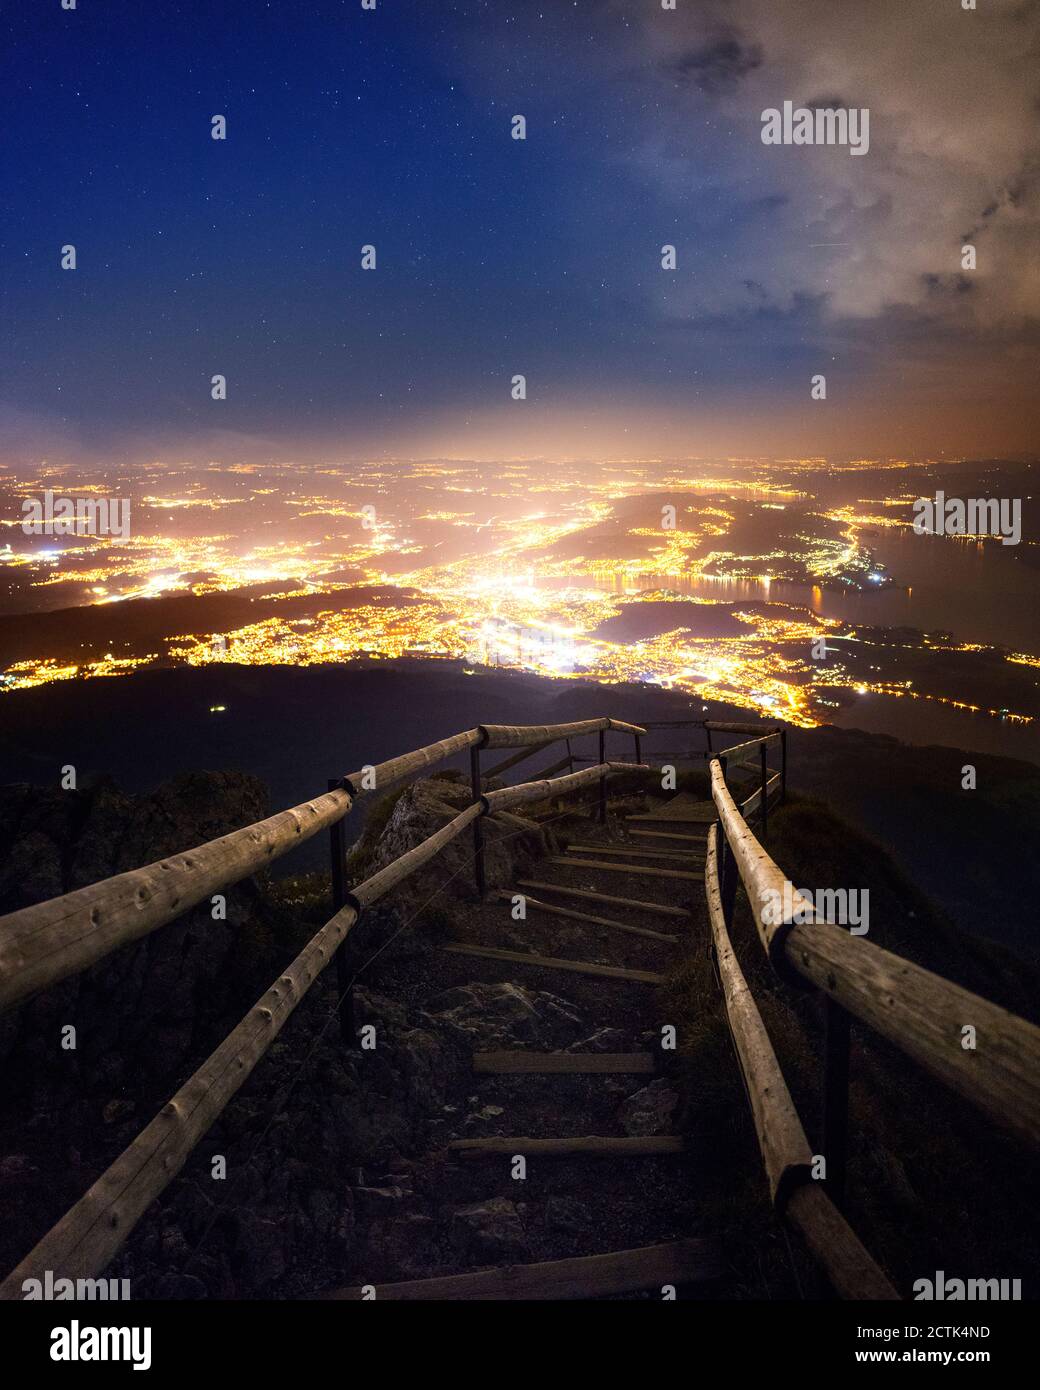 Svizzera, Cantone di Lucerna, Lucerna, scalinata sulla cima del Pilato al crepuscolo con la città illuminata sullo sfondo Foto Stock